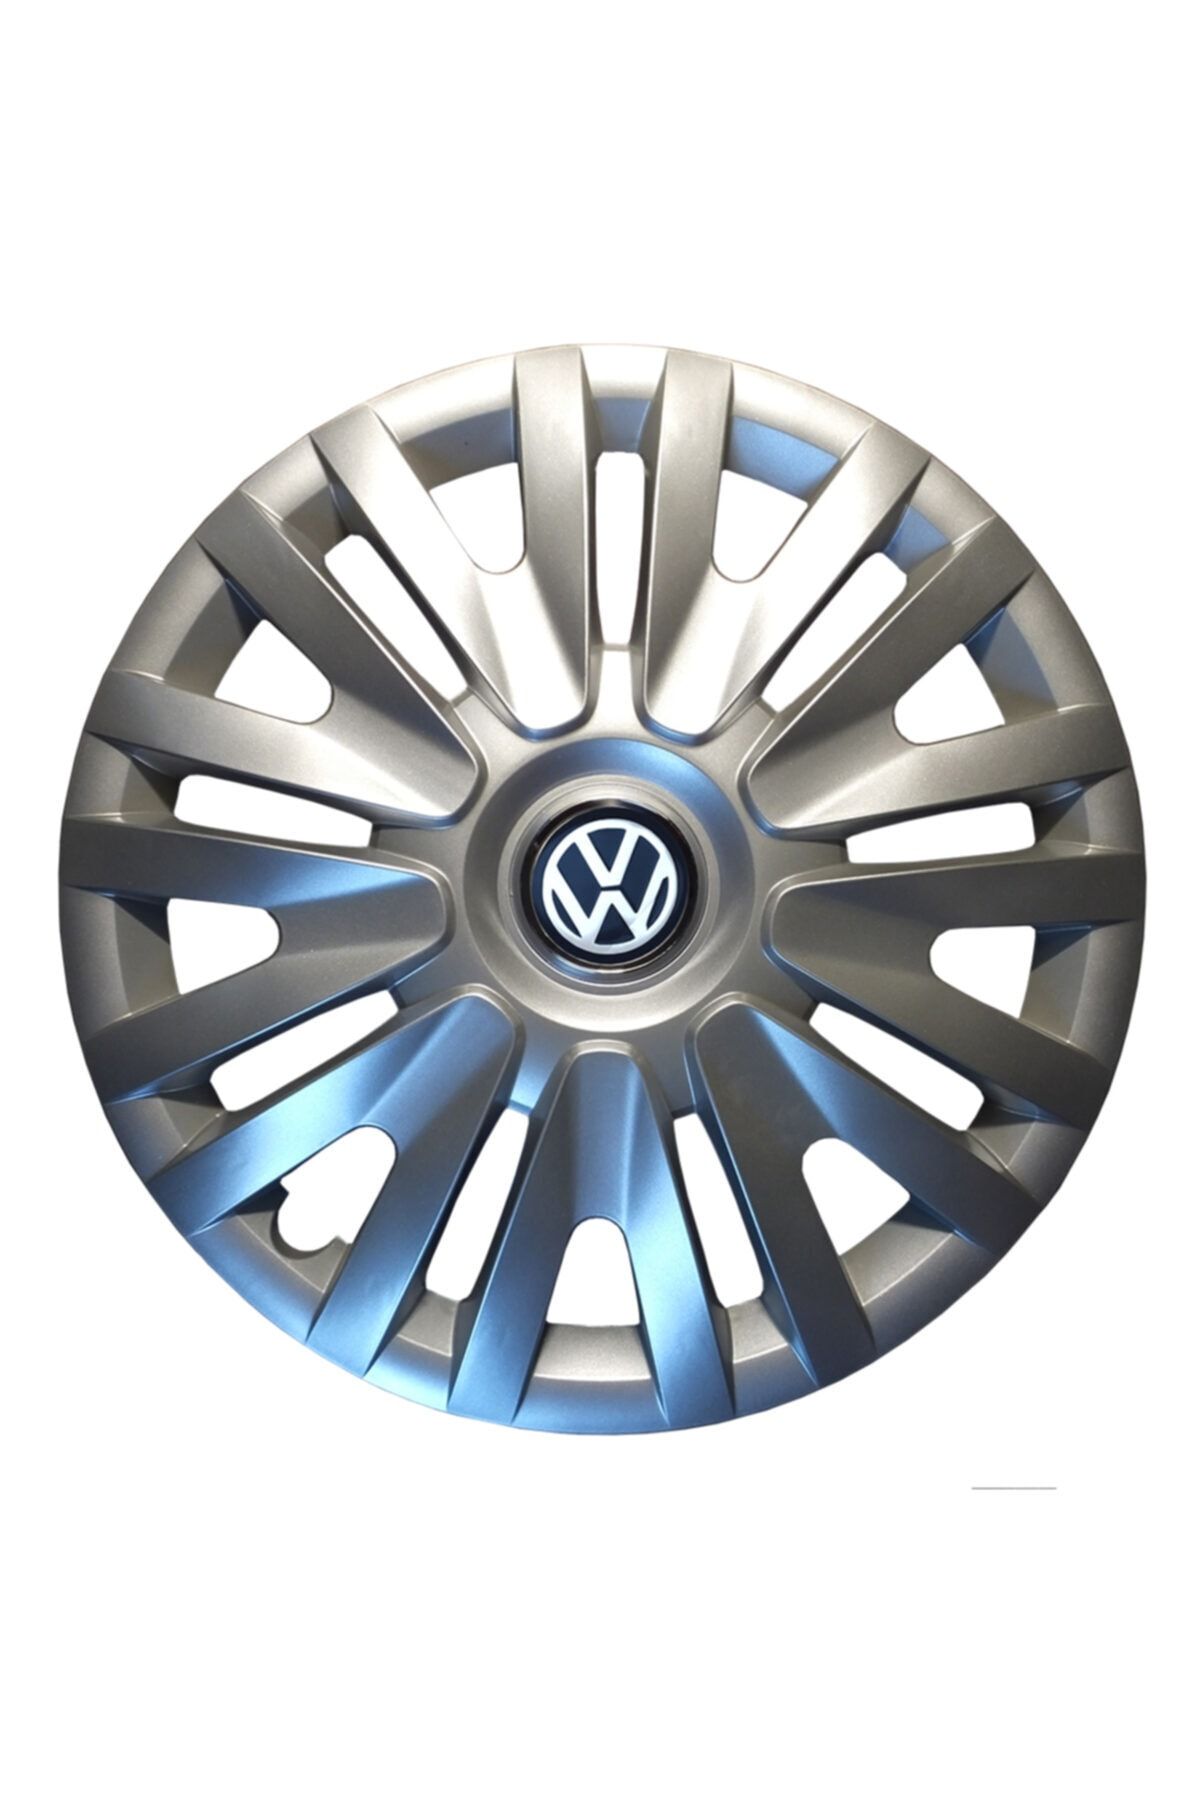 arkem Kırılmaz Volkswagen 14 Inç Jant Kapağı Takım 4 Adet